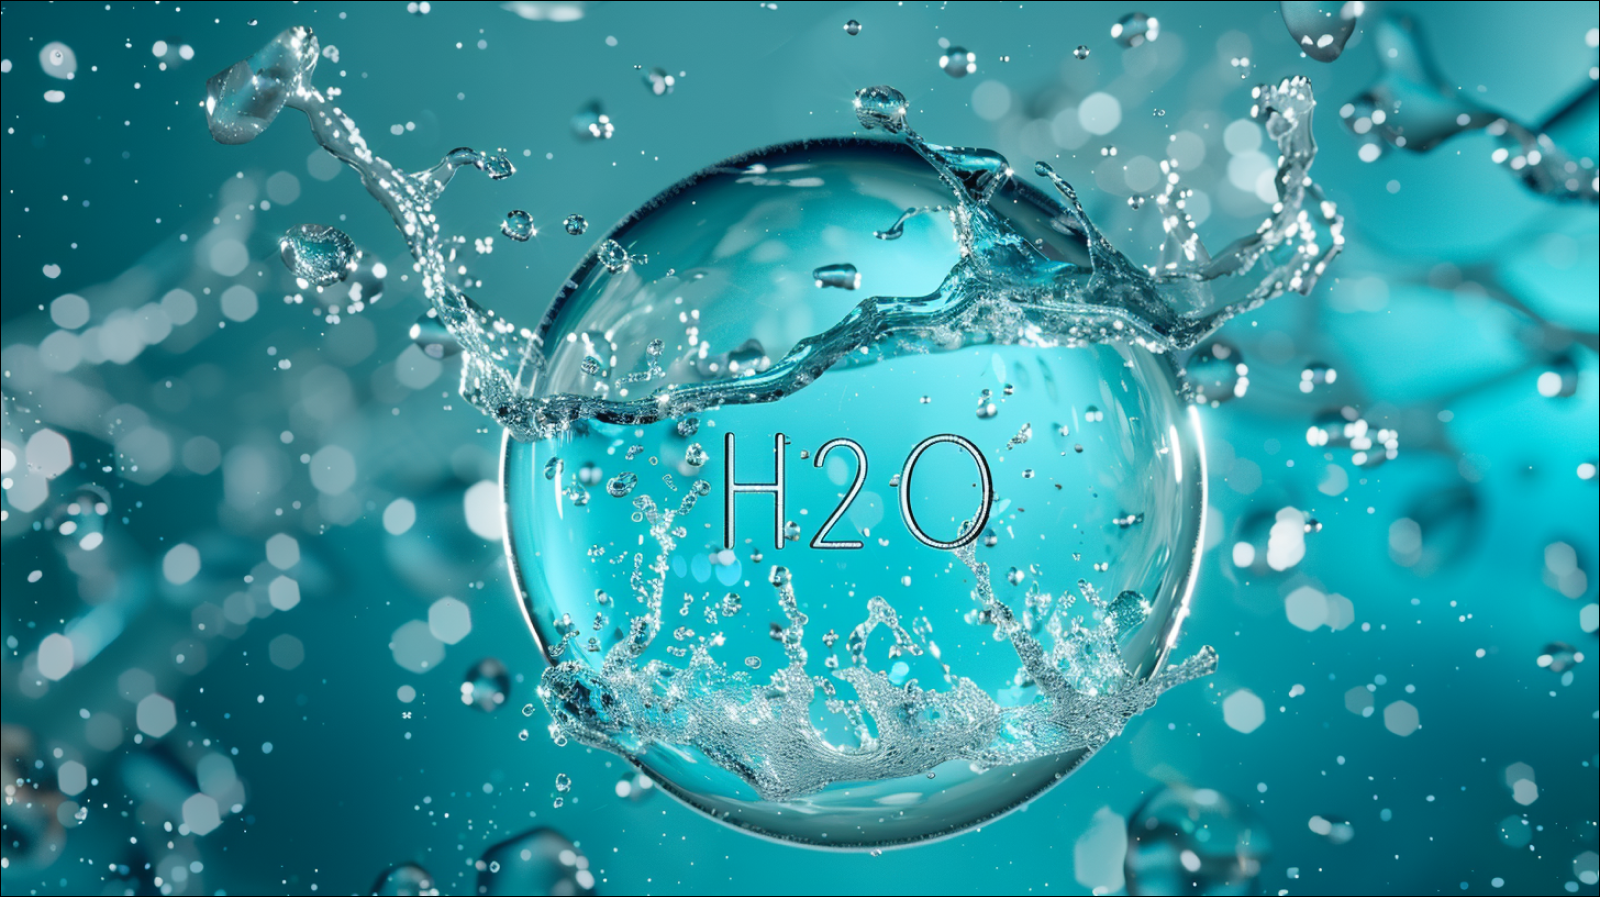 ein kreisförmiges Emblem mit der chemischen Formel H2O, umgeben von spritzendem Wasser